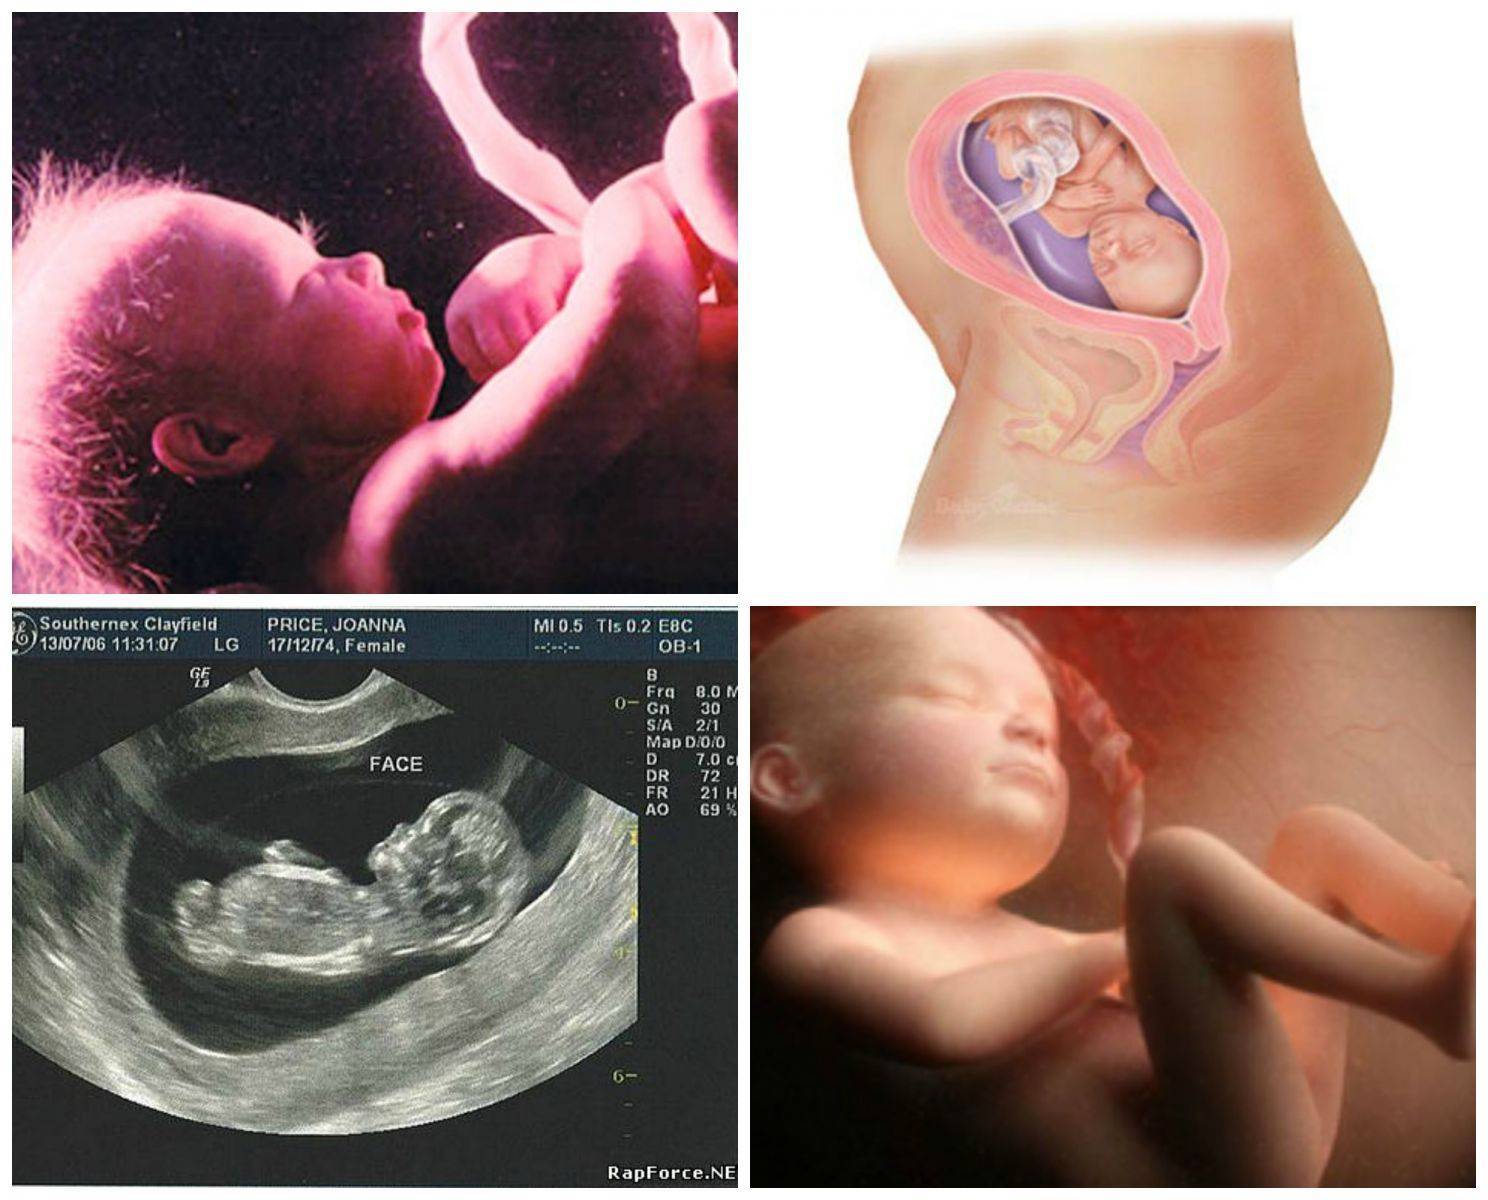 28 неделя беременности: изменения в организме матери и малыша, ощущения, медицинские обследования, питание и режим, факторы риска и опасности. календарь беременности по неделям.